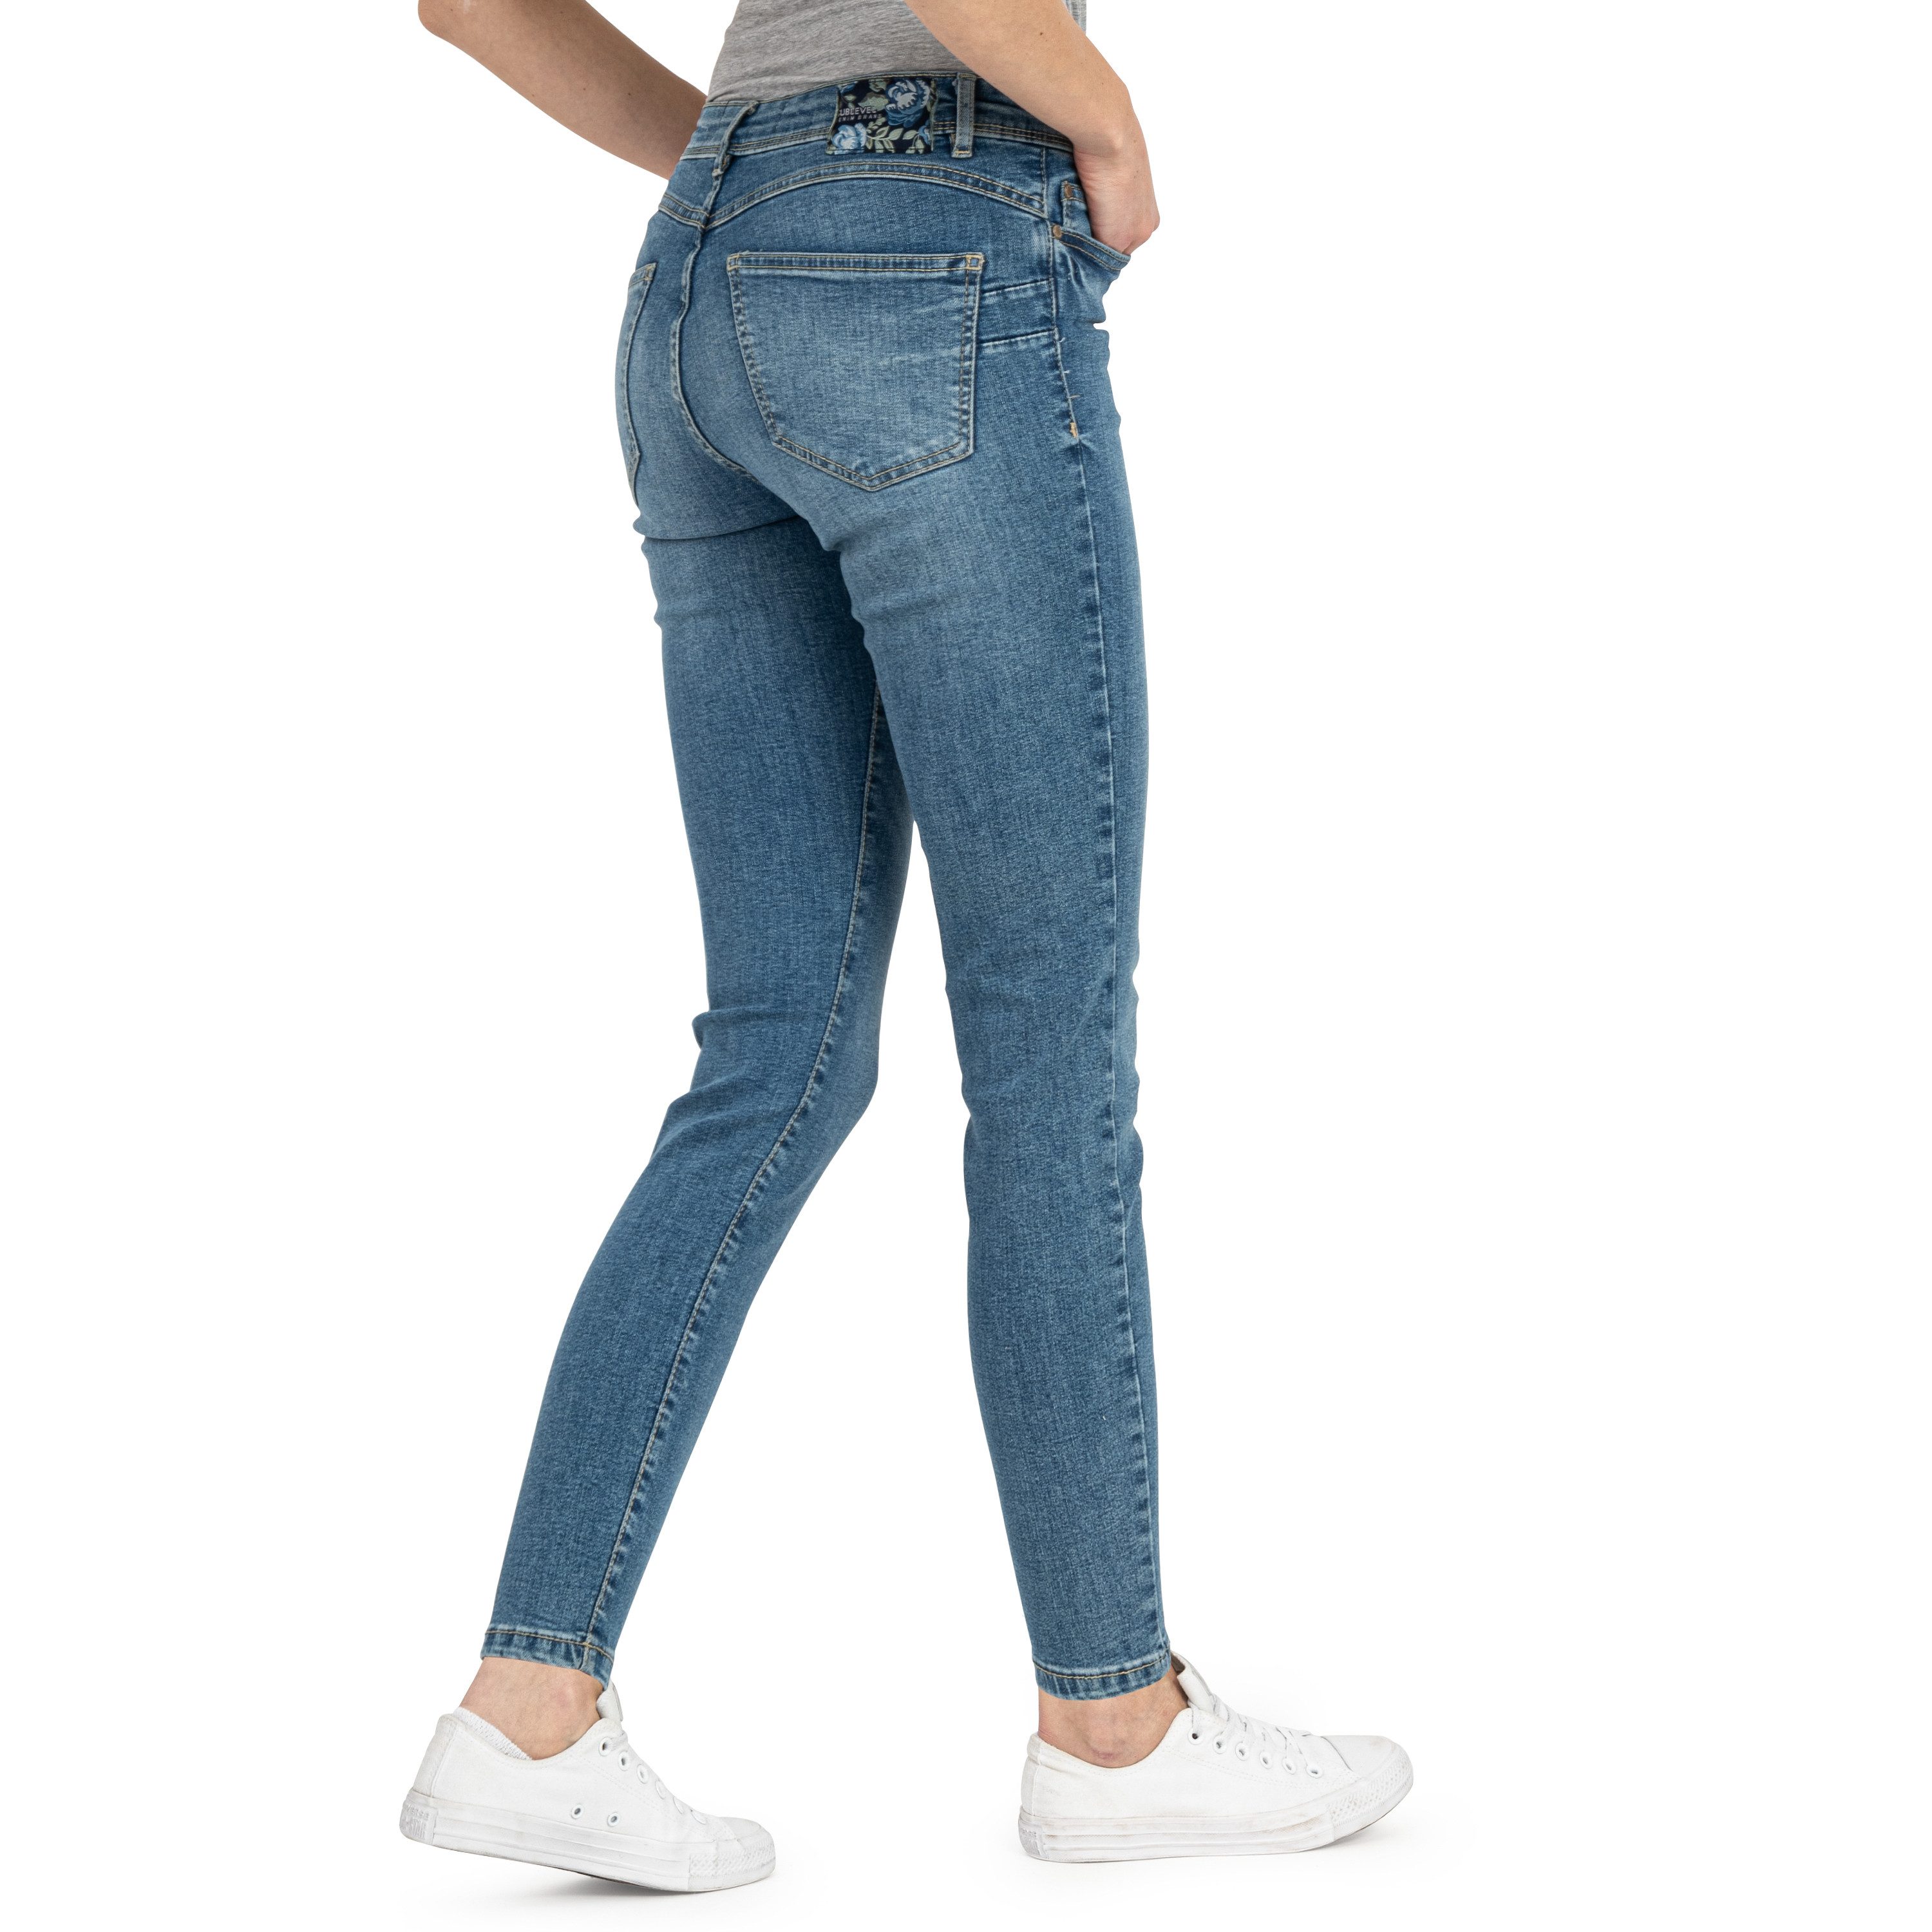 SUBLEVEL Slim-fit-Jeans Damen Jeans Skinny Slim Fit Jeanshose Hose Röhre Denim Stretch